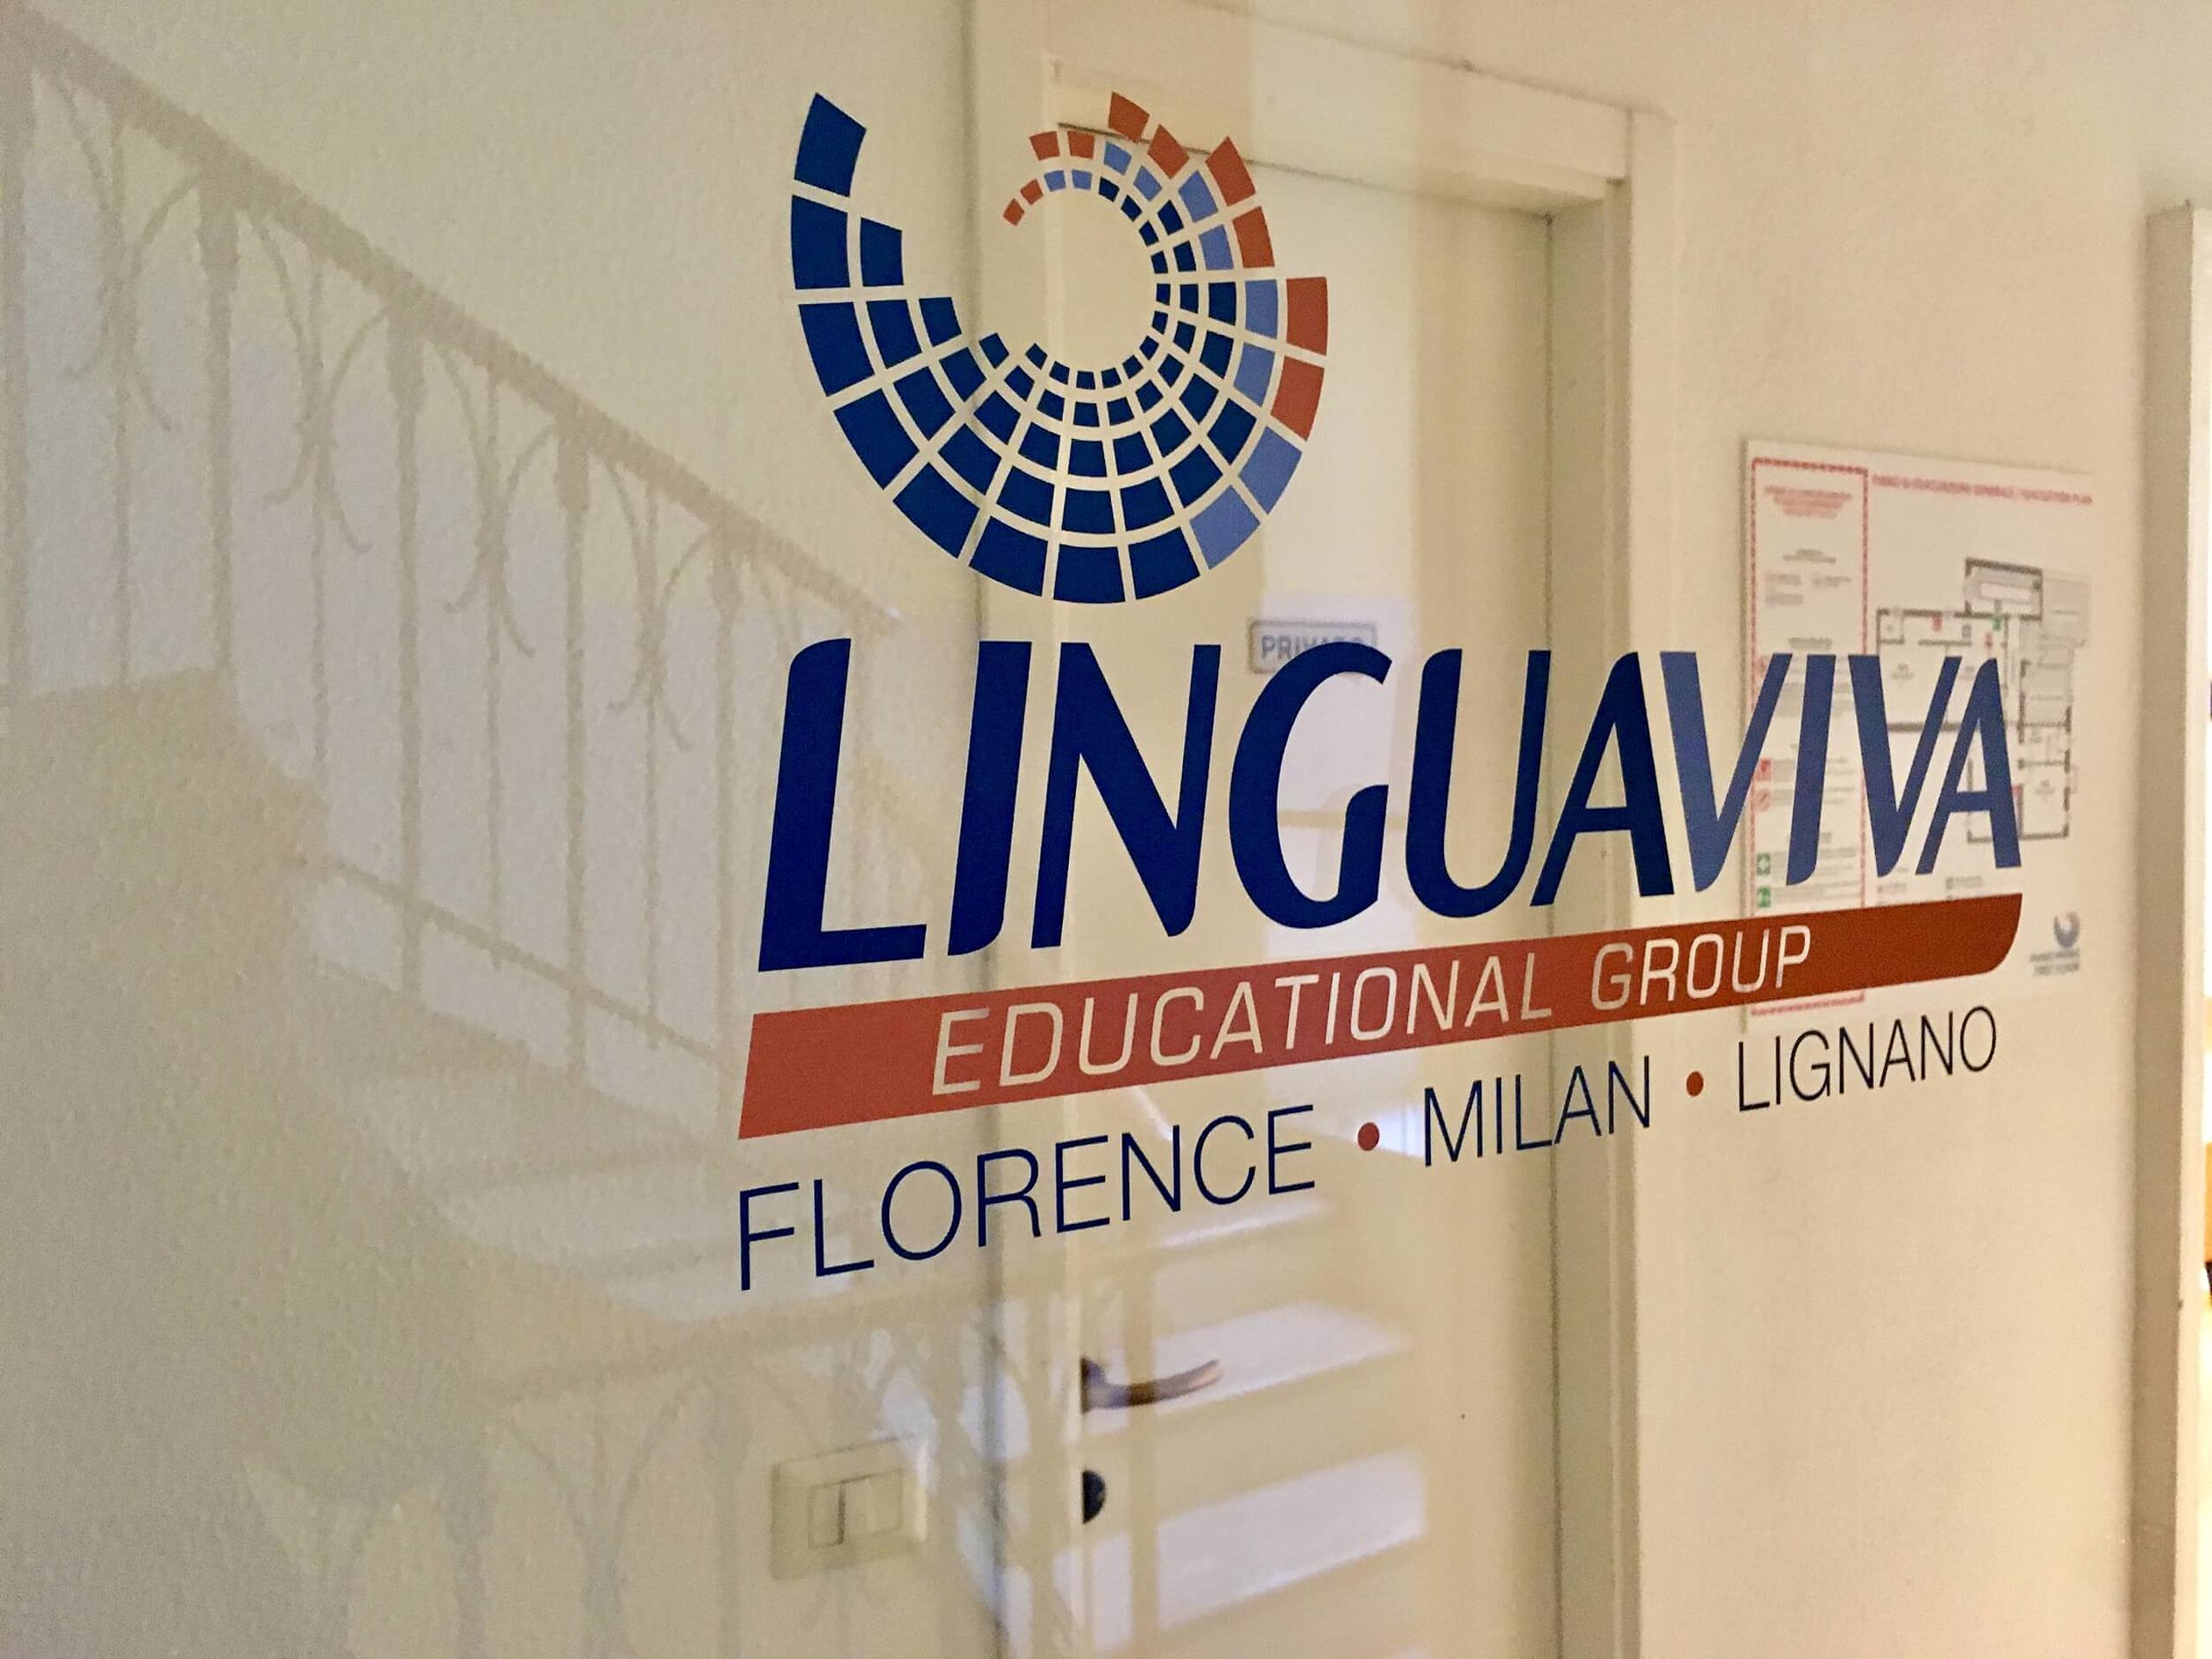 Hier finden Sie Infos zur Sprachreise zu Linguadue Mailand.